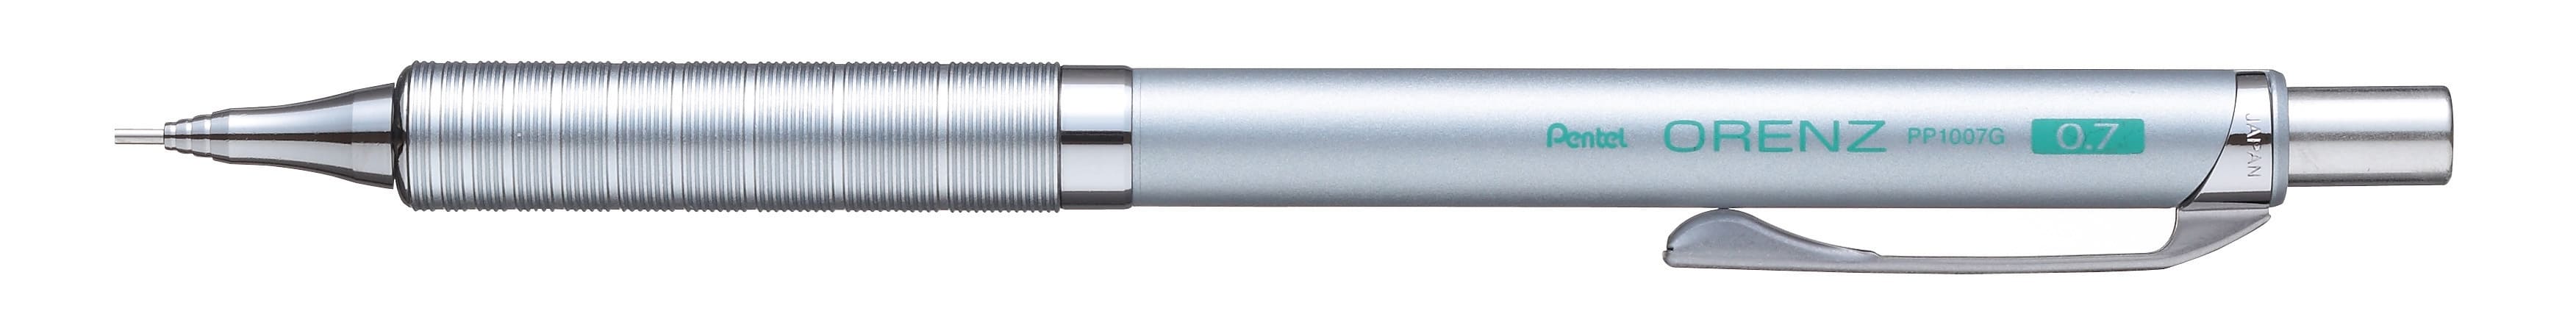 Карандаш механический Pentel Orenz Metal Grip PP1007G-ZX серебристый корпус 0,7мм